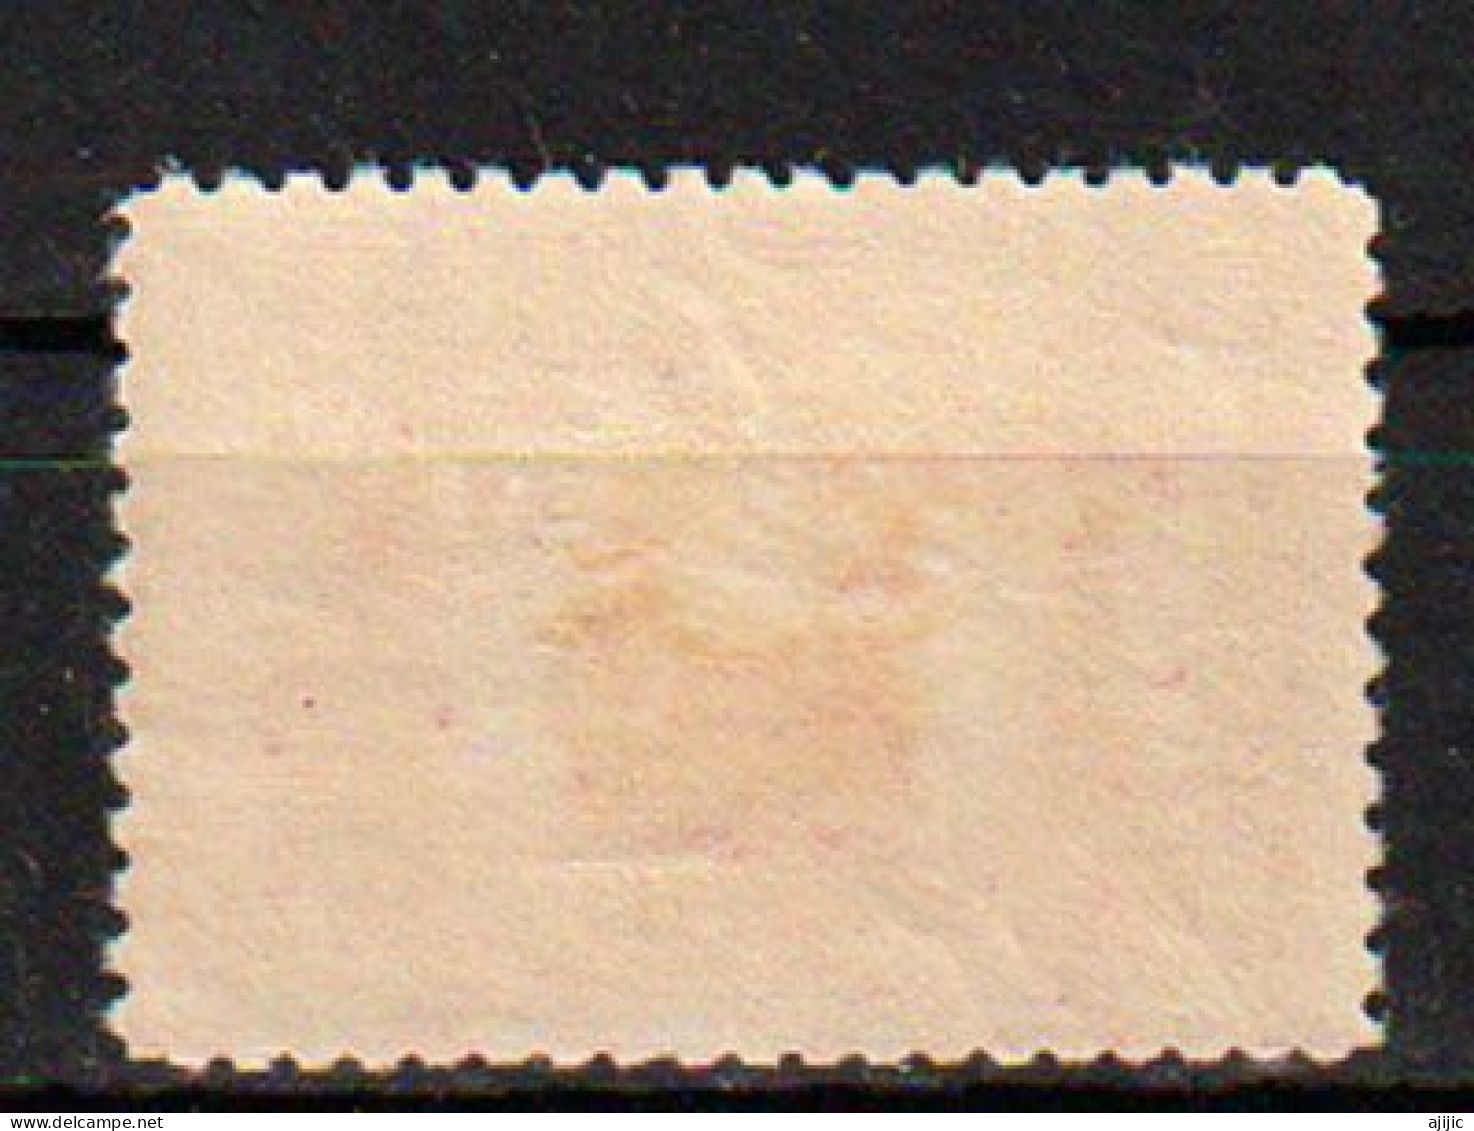 Centenaire De La Colonie D'Australie Occidentale 1929. Yv. 67 Neuf * Avec Charnière (cygne Noir) - Nuovi